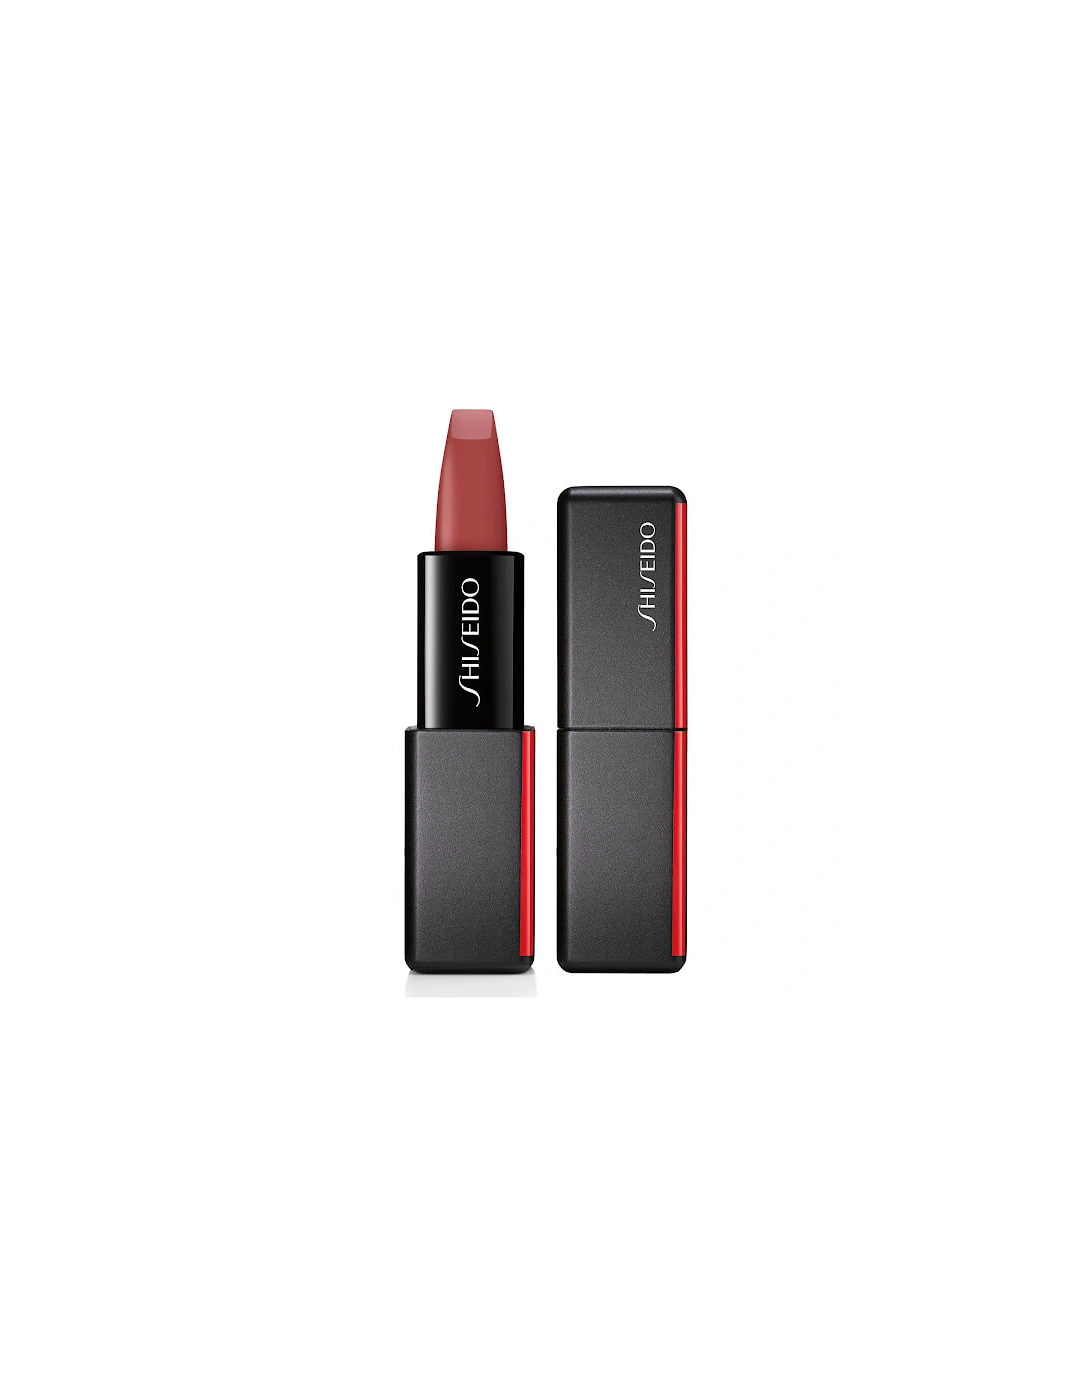 ModernMatte Powder Lipstick - Semi Nude 508 - Shiseido, 2 of 1